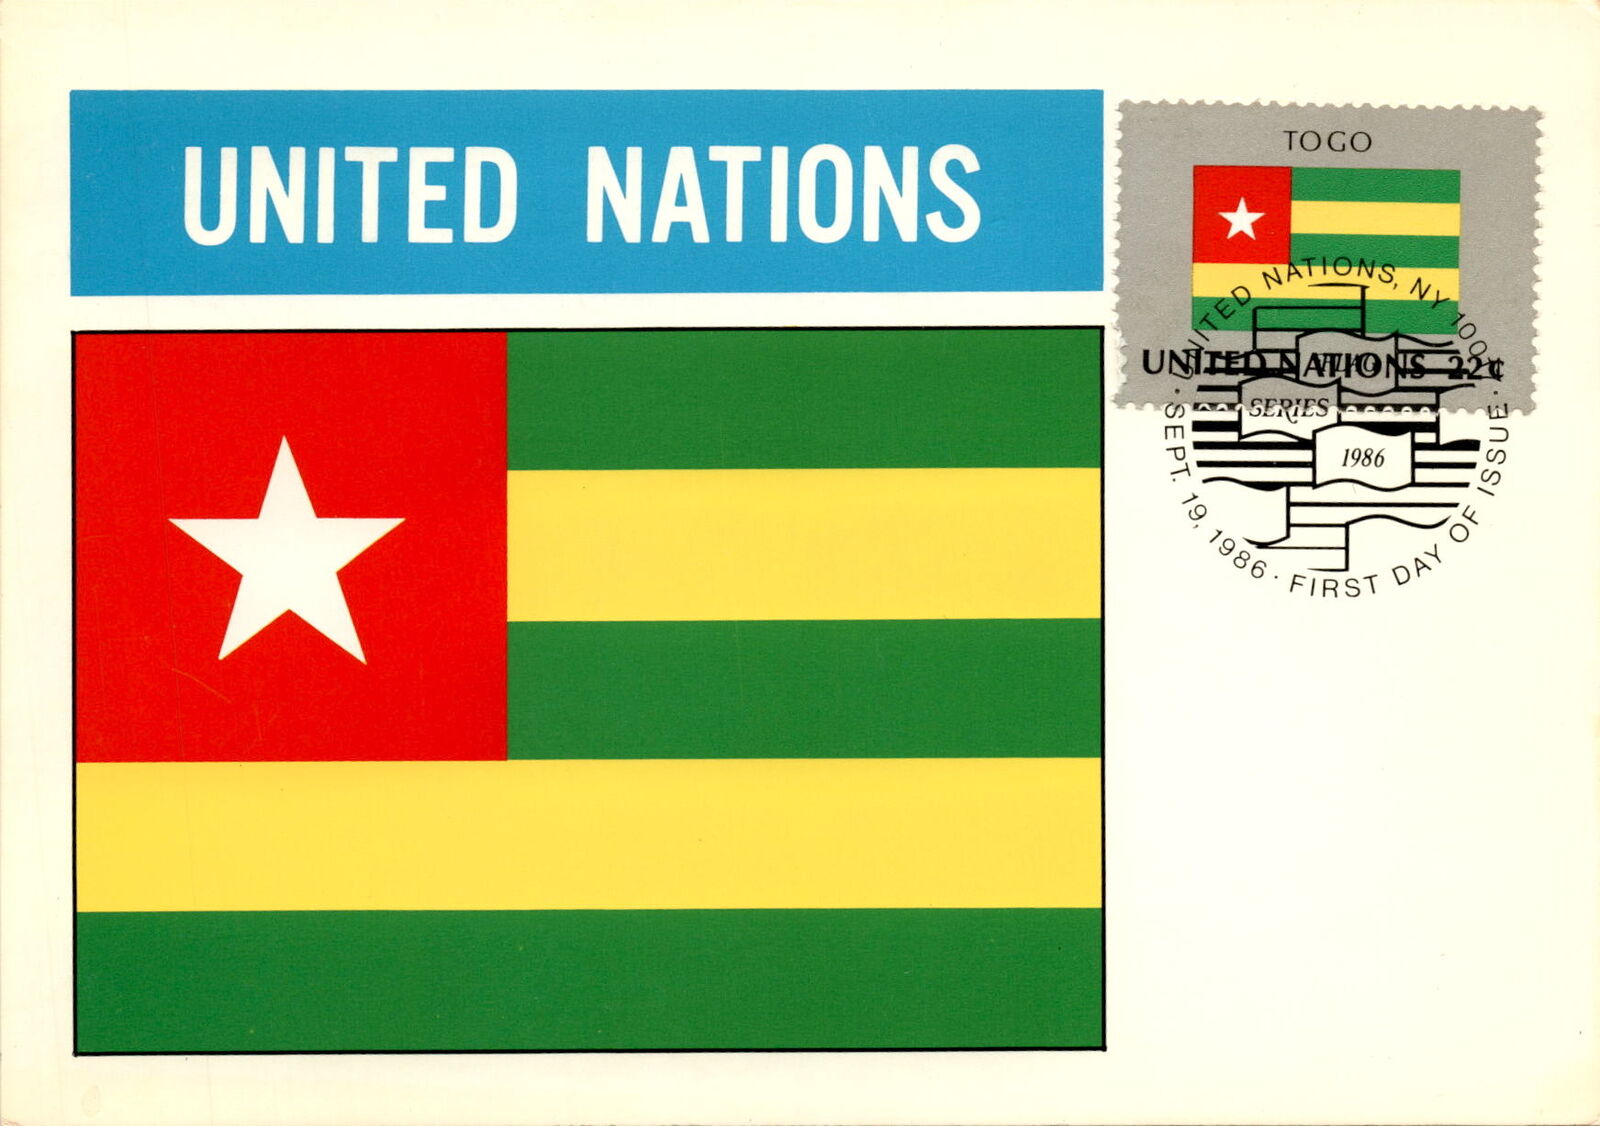 Togo, United Nations, Flaggen der Nationen 1986, Republic of Togo, Lomé Postcard